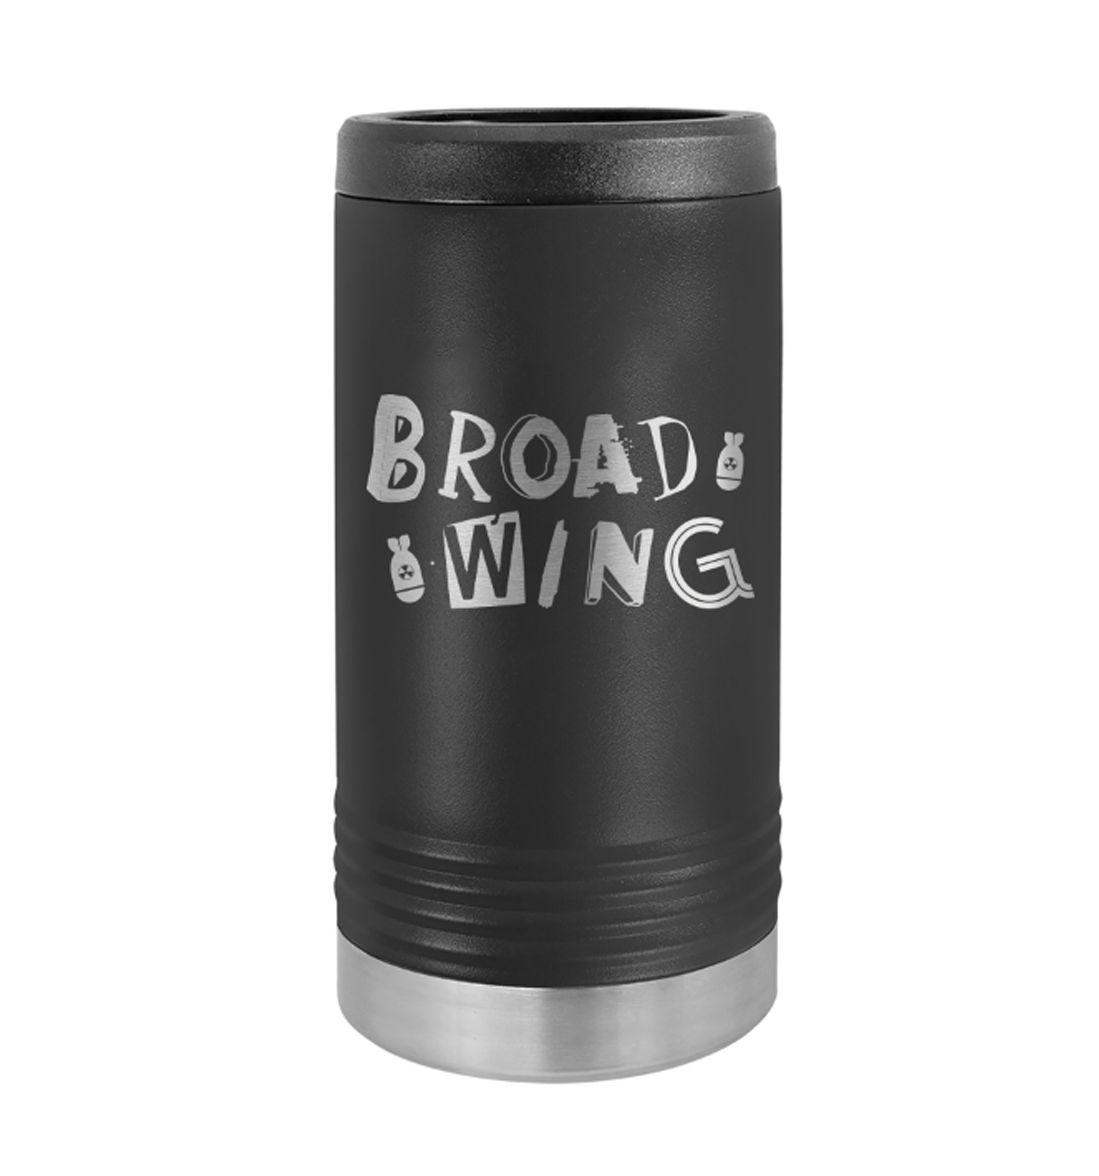 Broadwing logo beverage holder